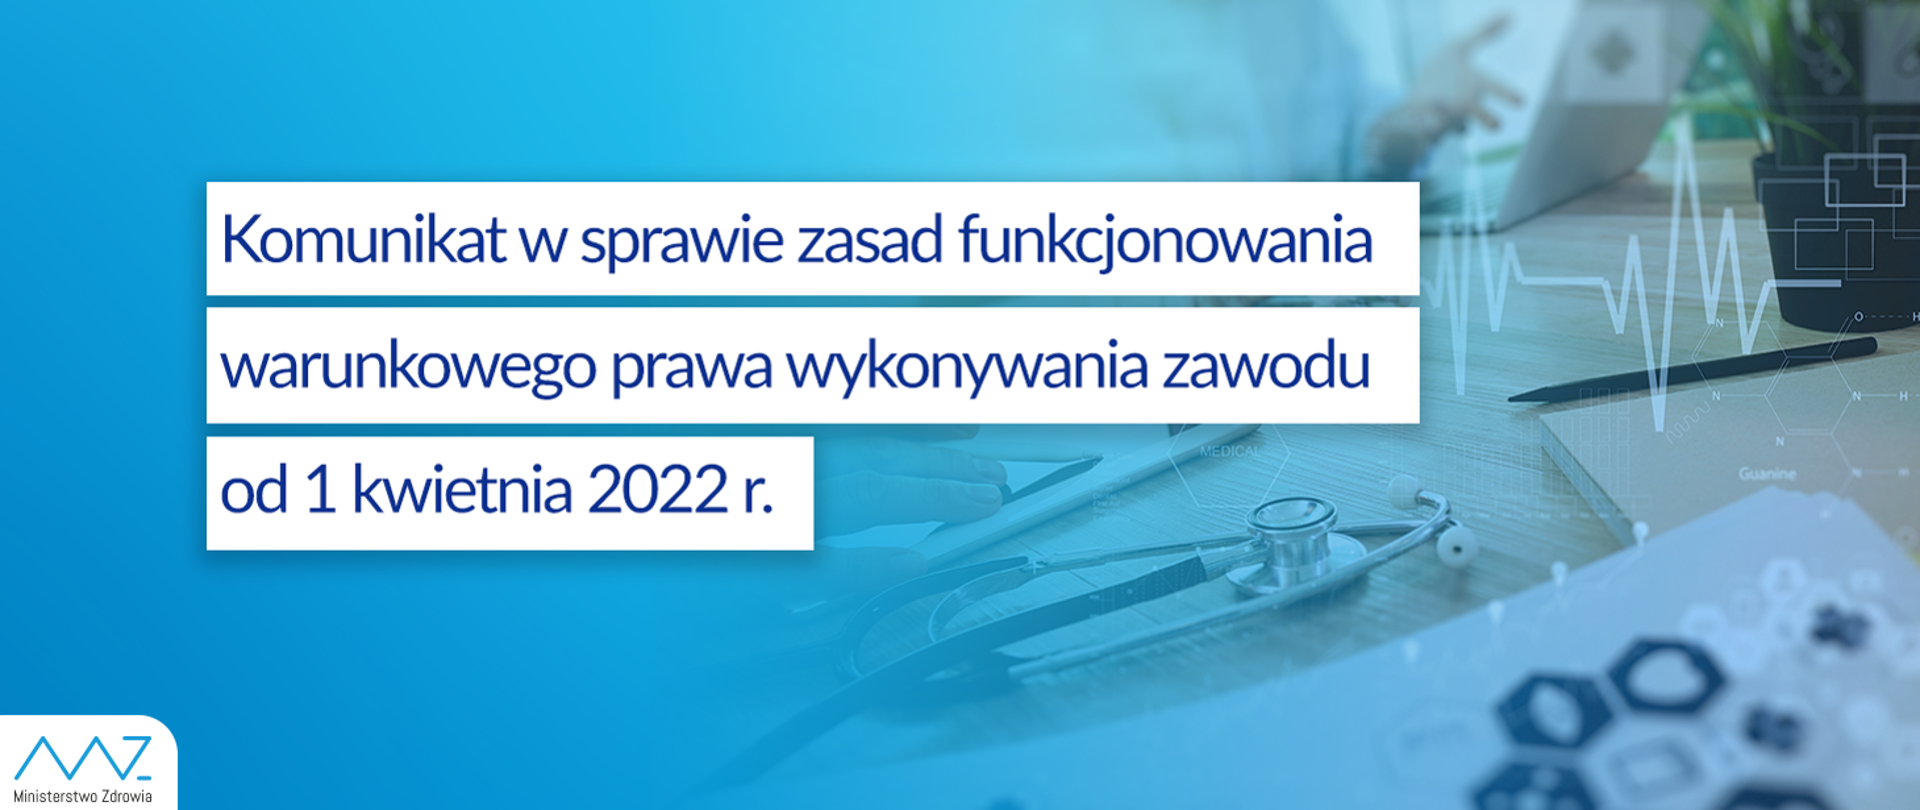 Komunikat w sprawie zasad funkcjonowania warunkowego prawa wykonywania zawodu od 1 kwietnia 2022r.